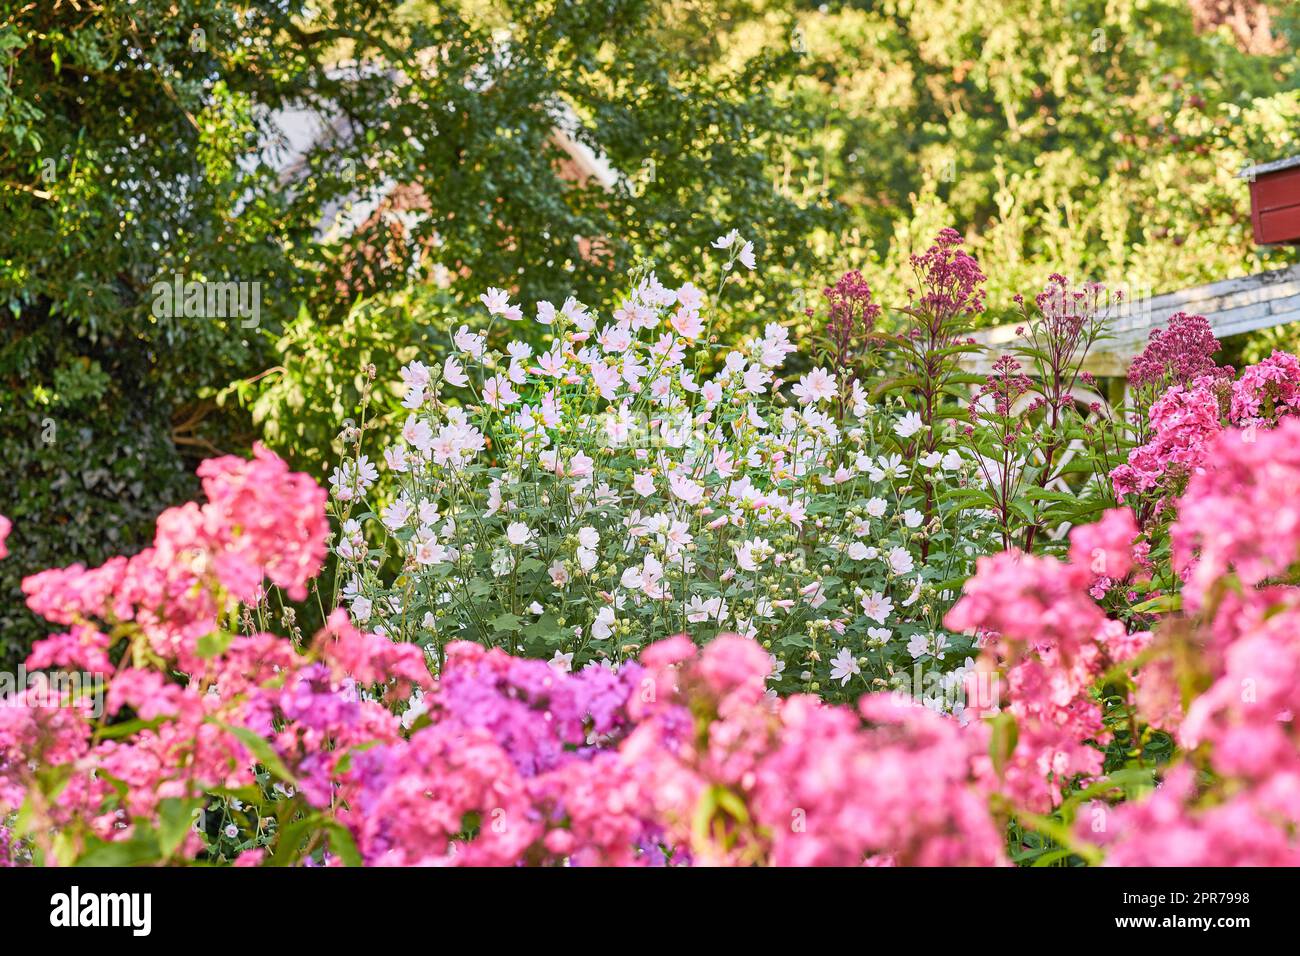 Fiori del cosmo rosa che crescono e fioriscono in un lussureggiante cespuglio verde in un giardino o in un cortile. Dettagli testurizzati di varie piante che fioriscono e fioriscono. Appassionato di orticoltura e botanica fresca Foto Stock